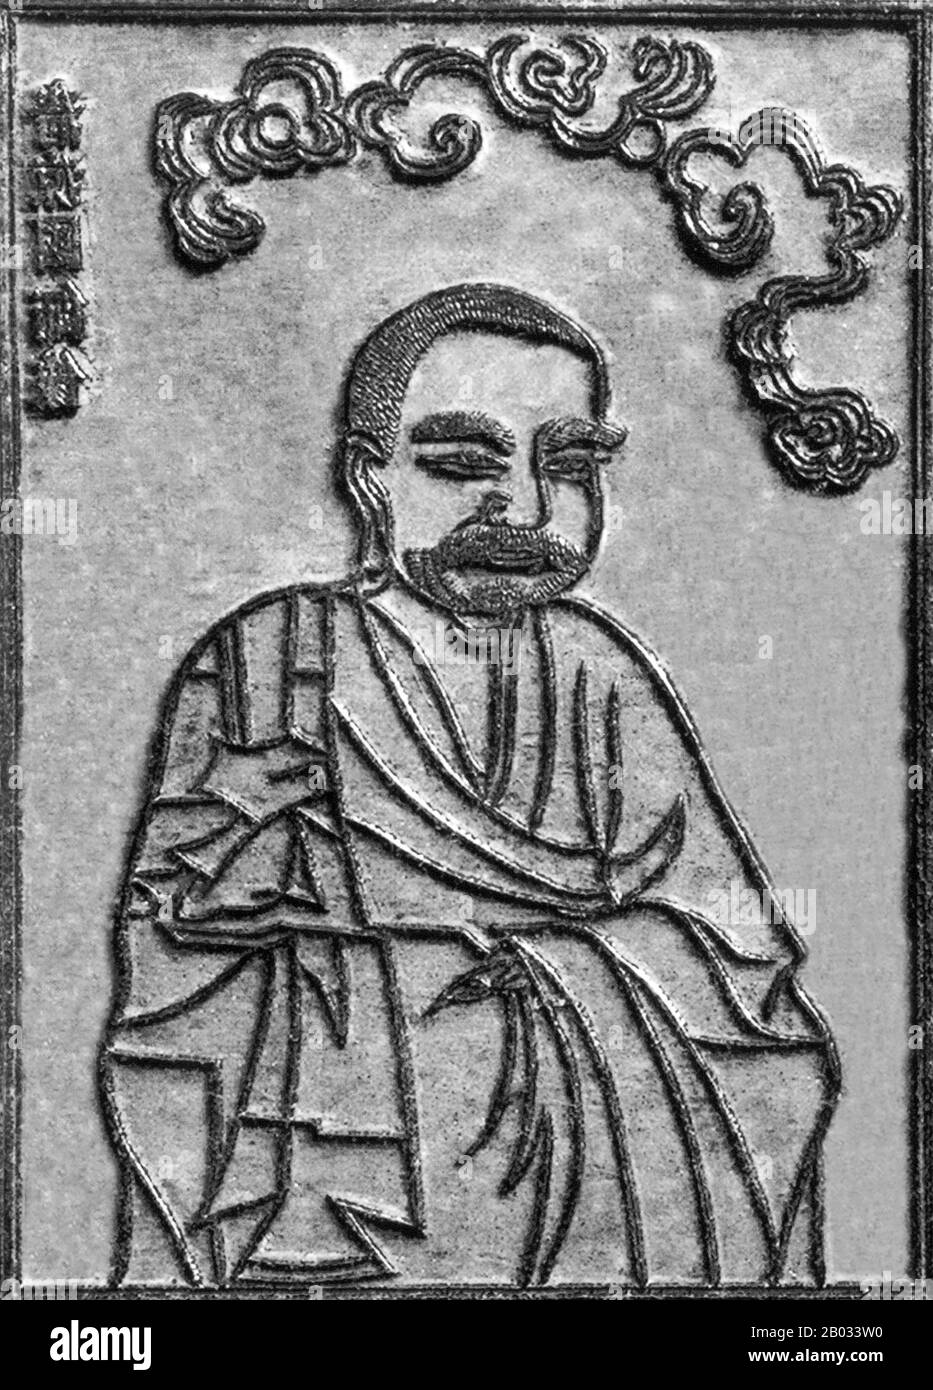 Die Sammlung von Holzblöcken, die in der Vinh Nghiem Pagode, Provinz Bac Giang, gefunden wurden, wurde von der UNESCO offiziell als Weltdokumentenerbe anerkannt. Die Sammlung wertvoller Holzblöcke, die im 13., 14., 15. Und 17. Jahrhundert entstanden sein sollen, liefert eine Fülle von Informationen über die Gründung, Entwicklung und Ideologie des Truc Lam Zen-Buddhismus, der von König Tran Nhan Tong im 11. Jahrhundert gegründet wurde. Stockfoto